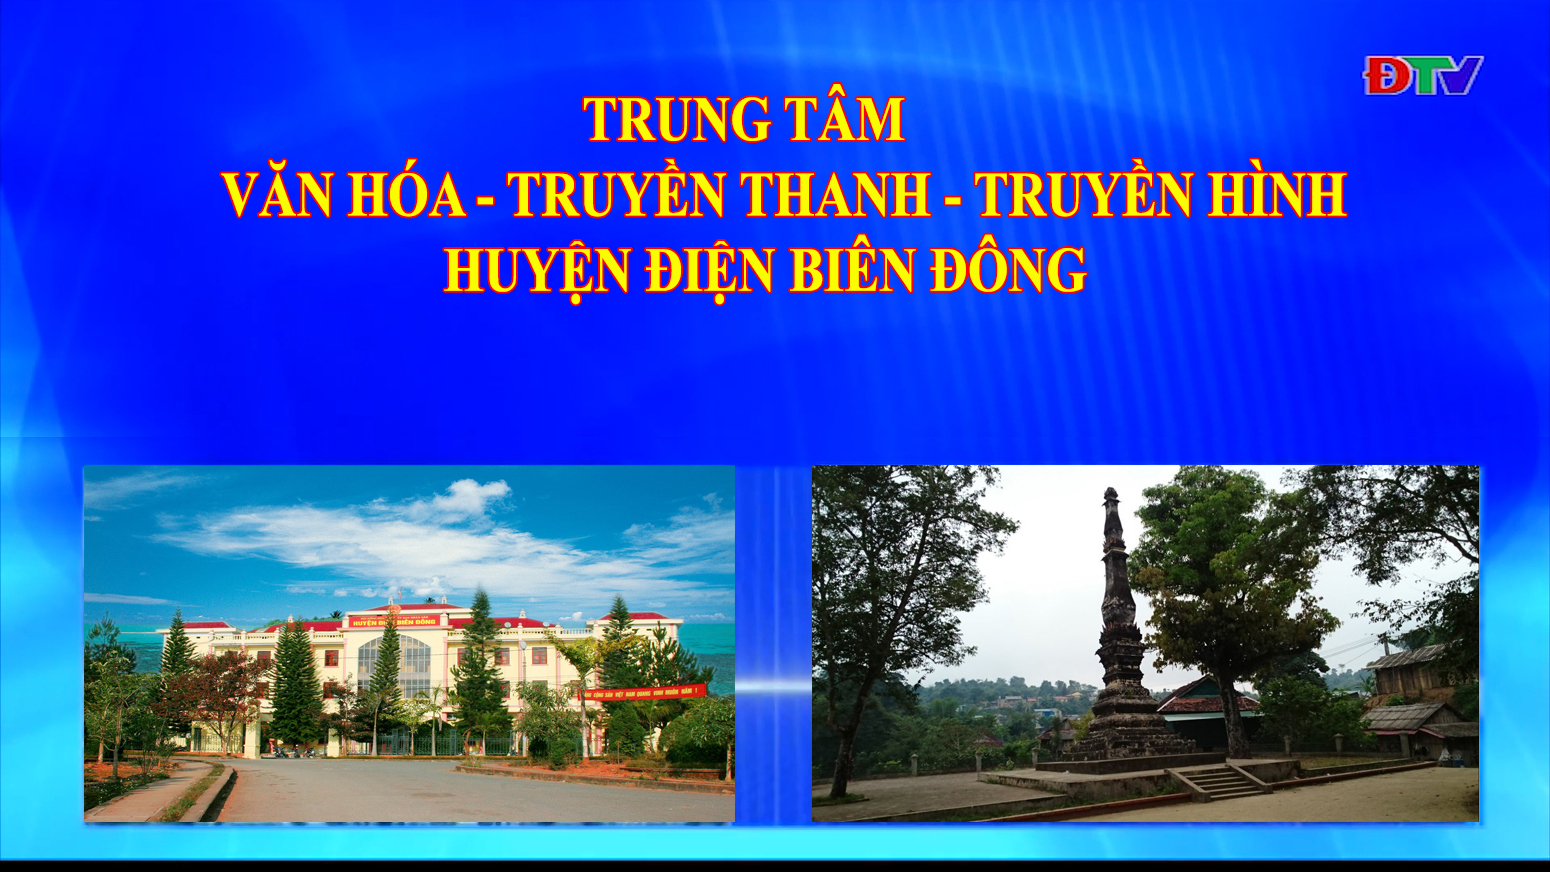 Trung tâm VH-TTTH huyện Điện Biên Đông (Ngày 6-3-2021)